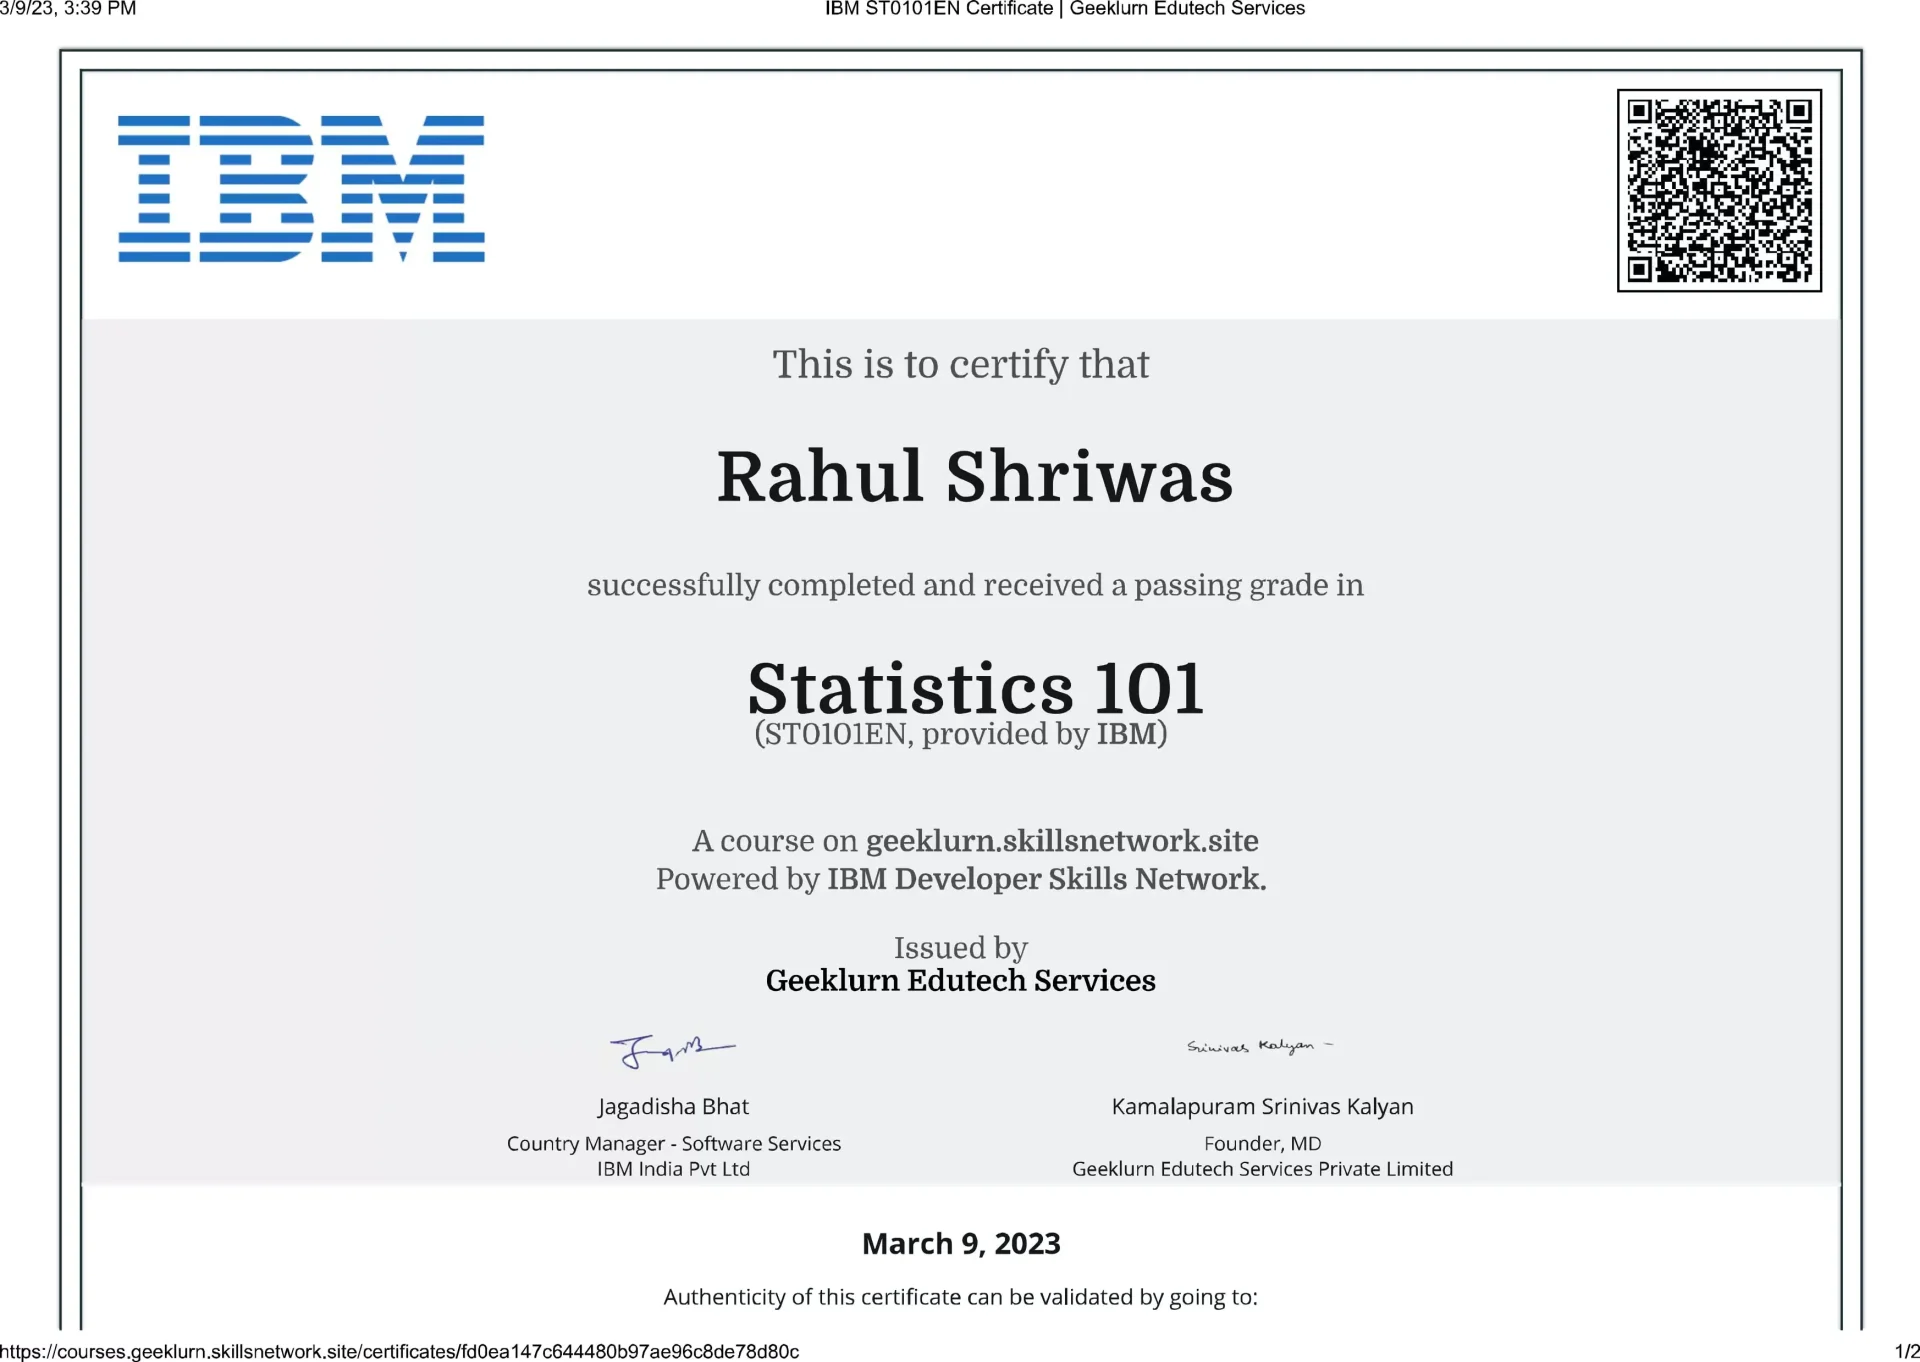 ibm-st0101en-certificate-geeklurn-edutech-services-9